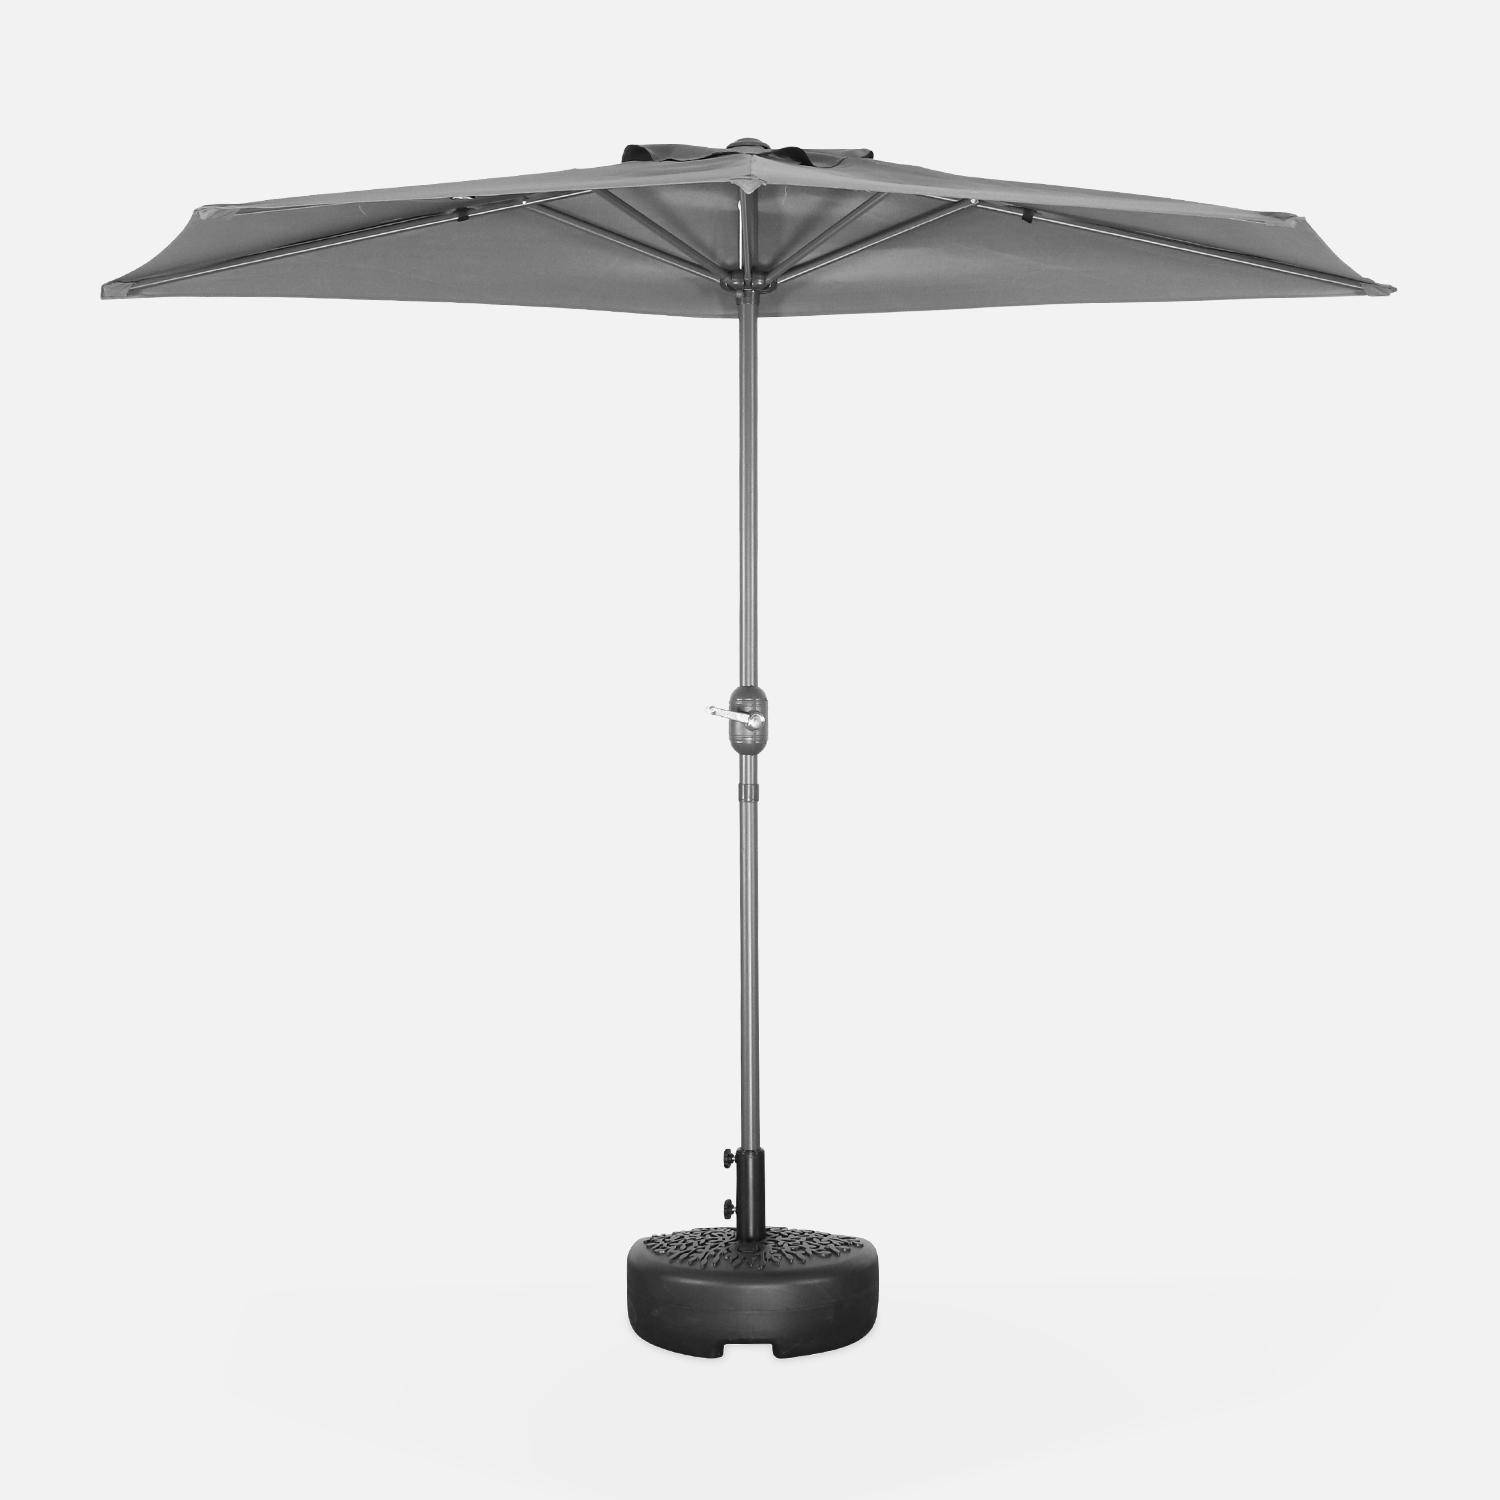  Parasol para balcón Ø250cm - CALVI - Medio parasol recto, mástil de aluminio con manivela, tejido gris,sweeek,Photo3